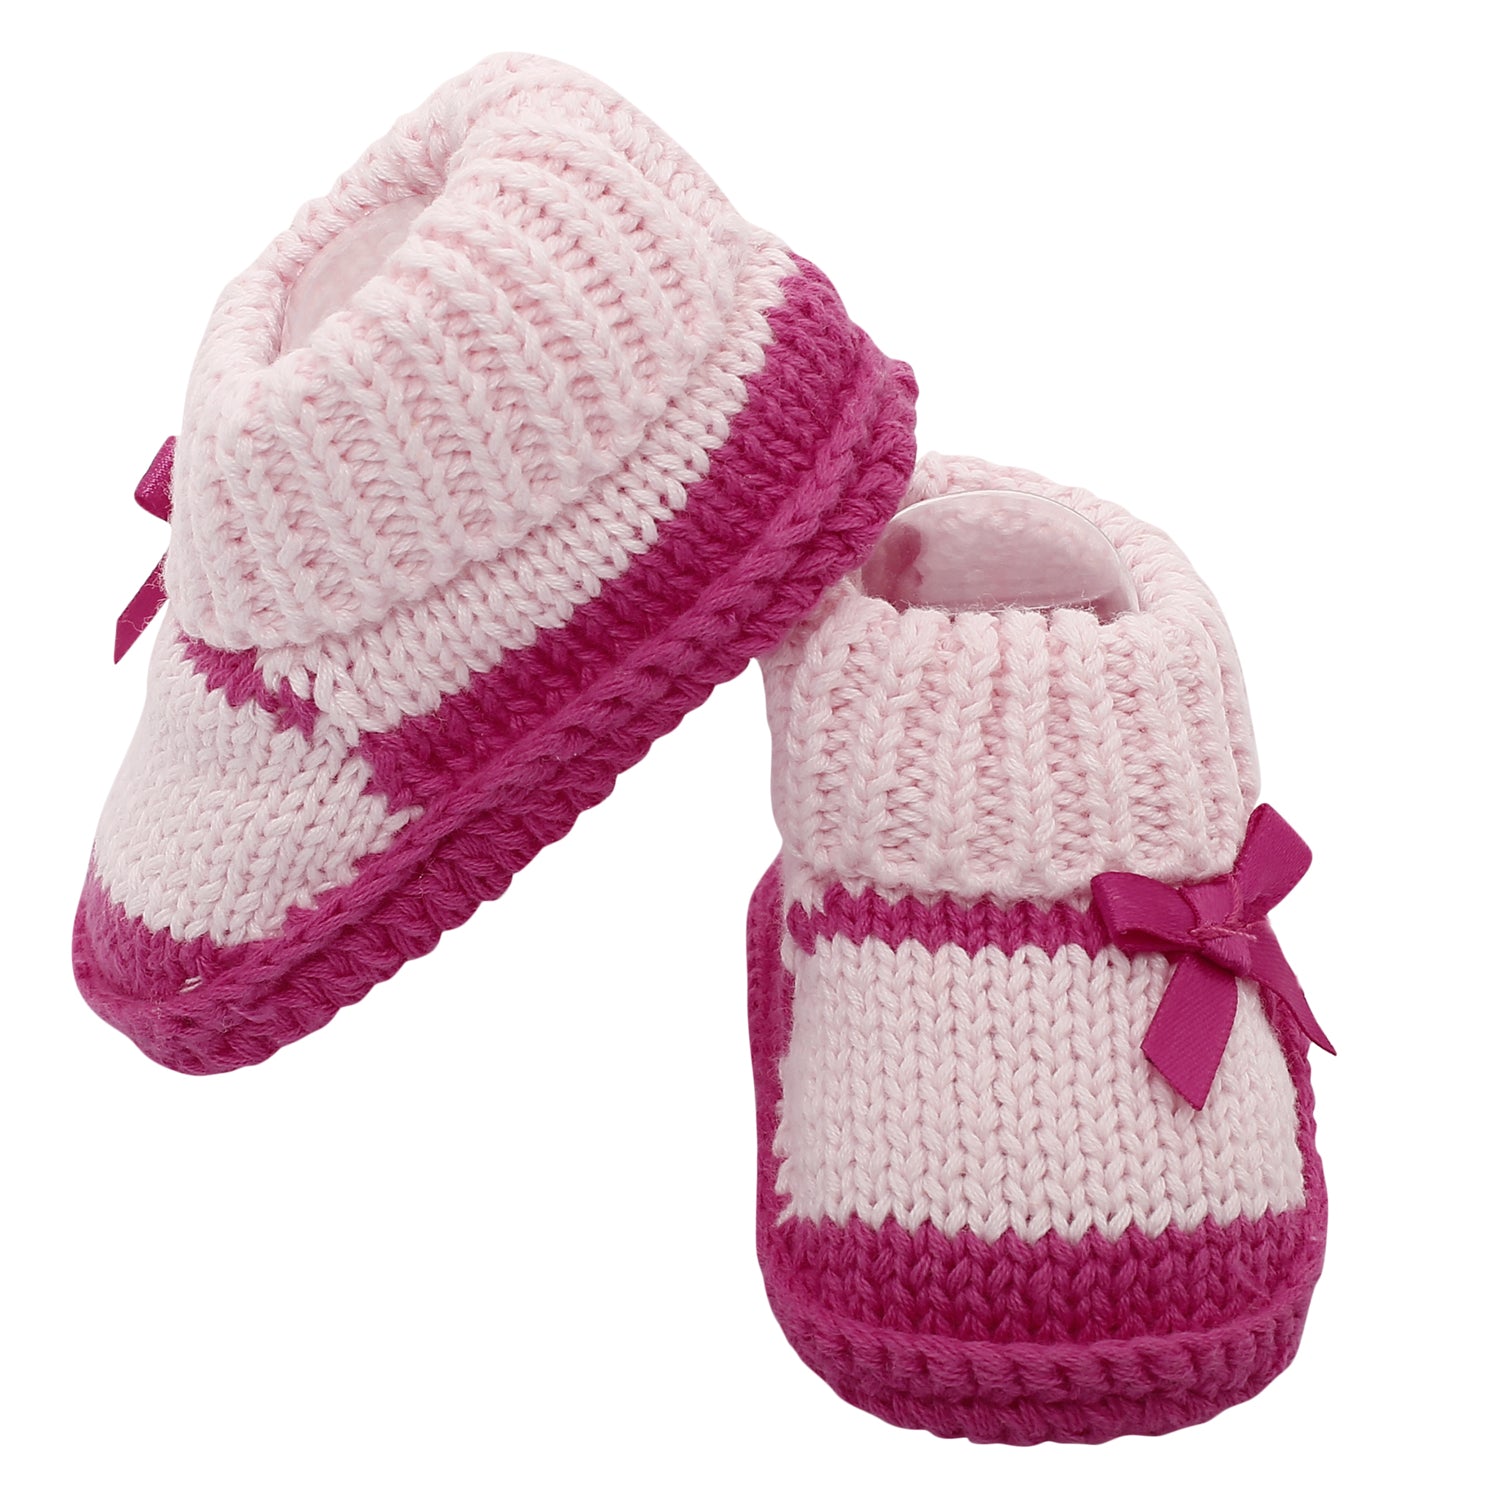 Sweet Bows Pink Socks Booties - Baby Moo